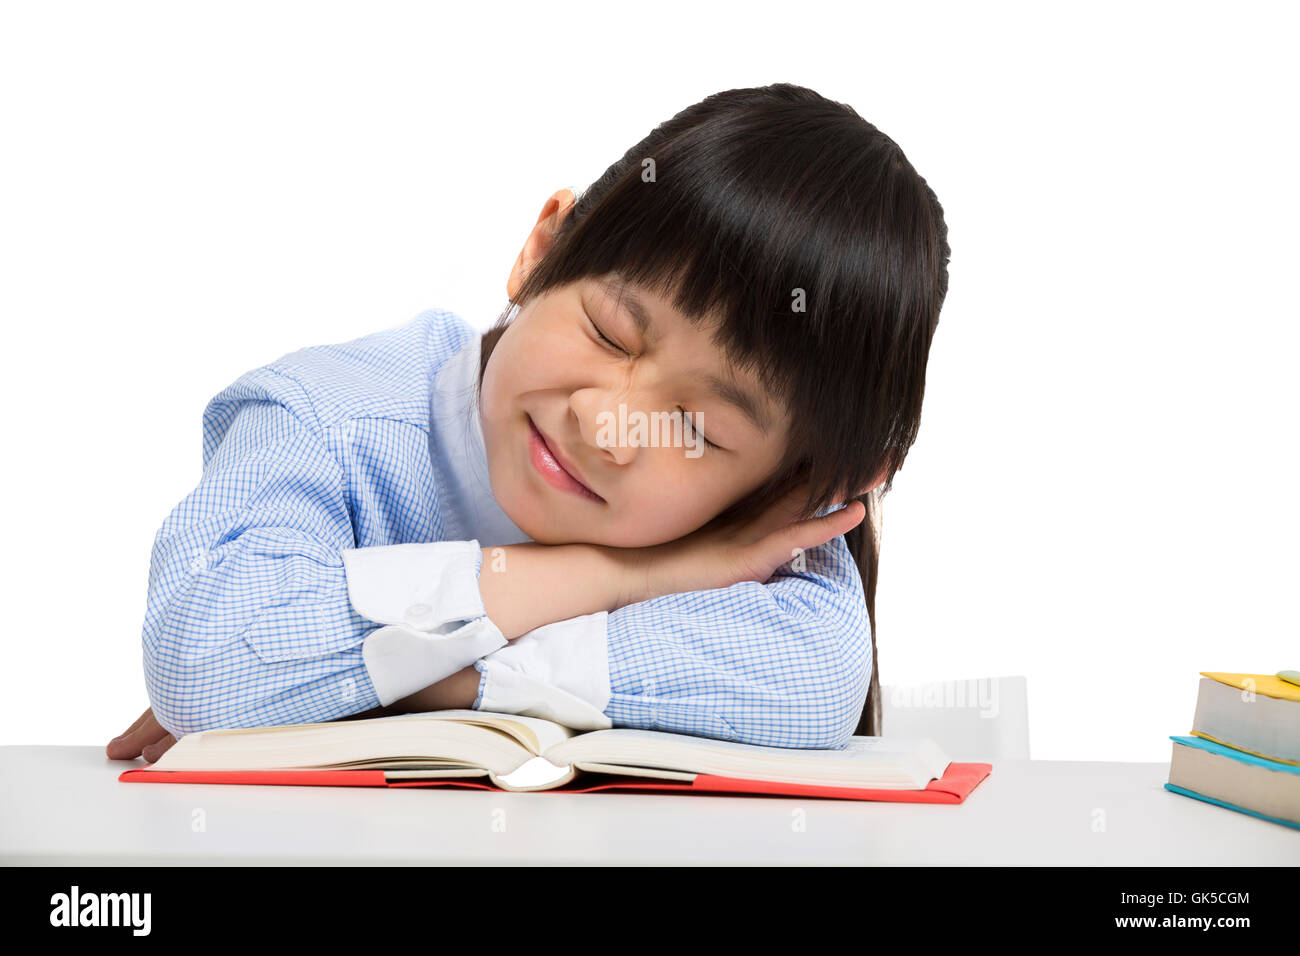 Little girl lying on the desk to sleep Stock Photo